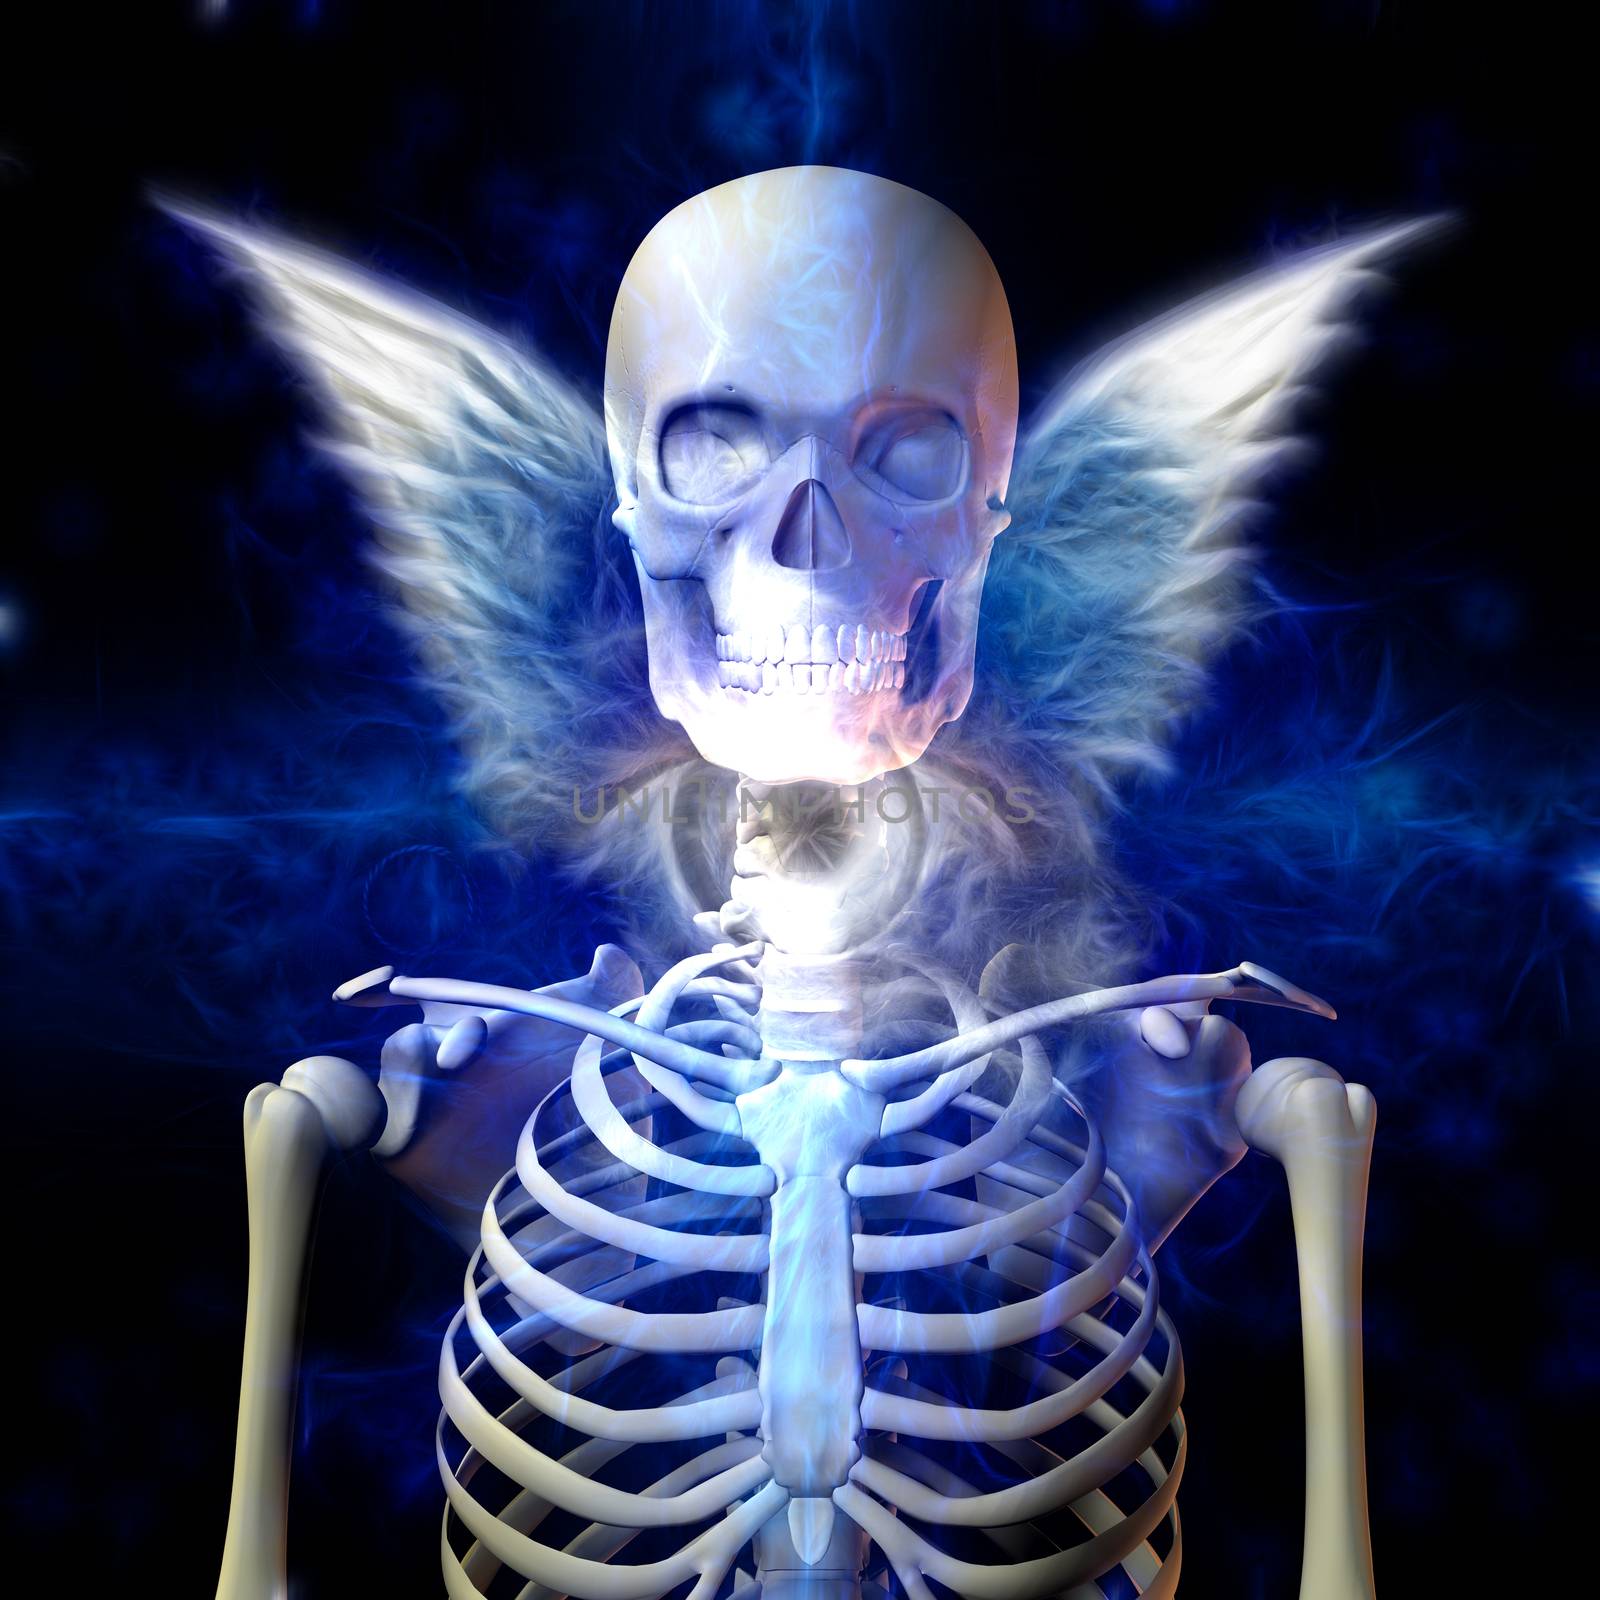 Winged Skeleton by applesstock